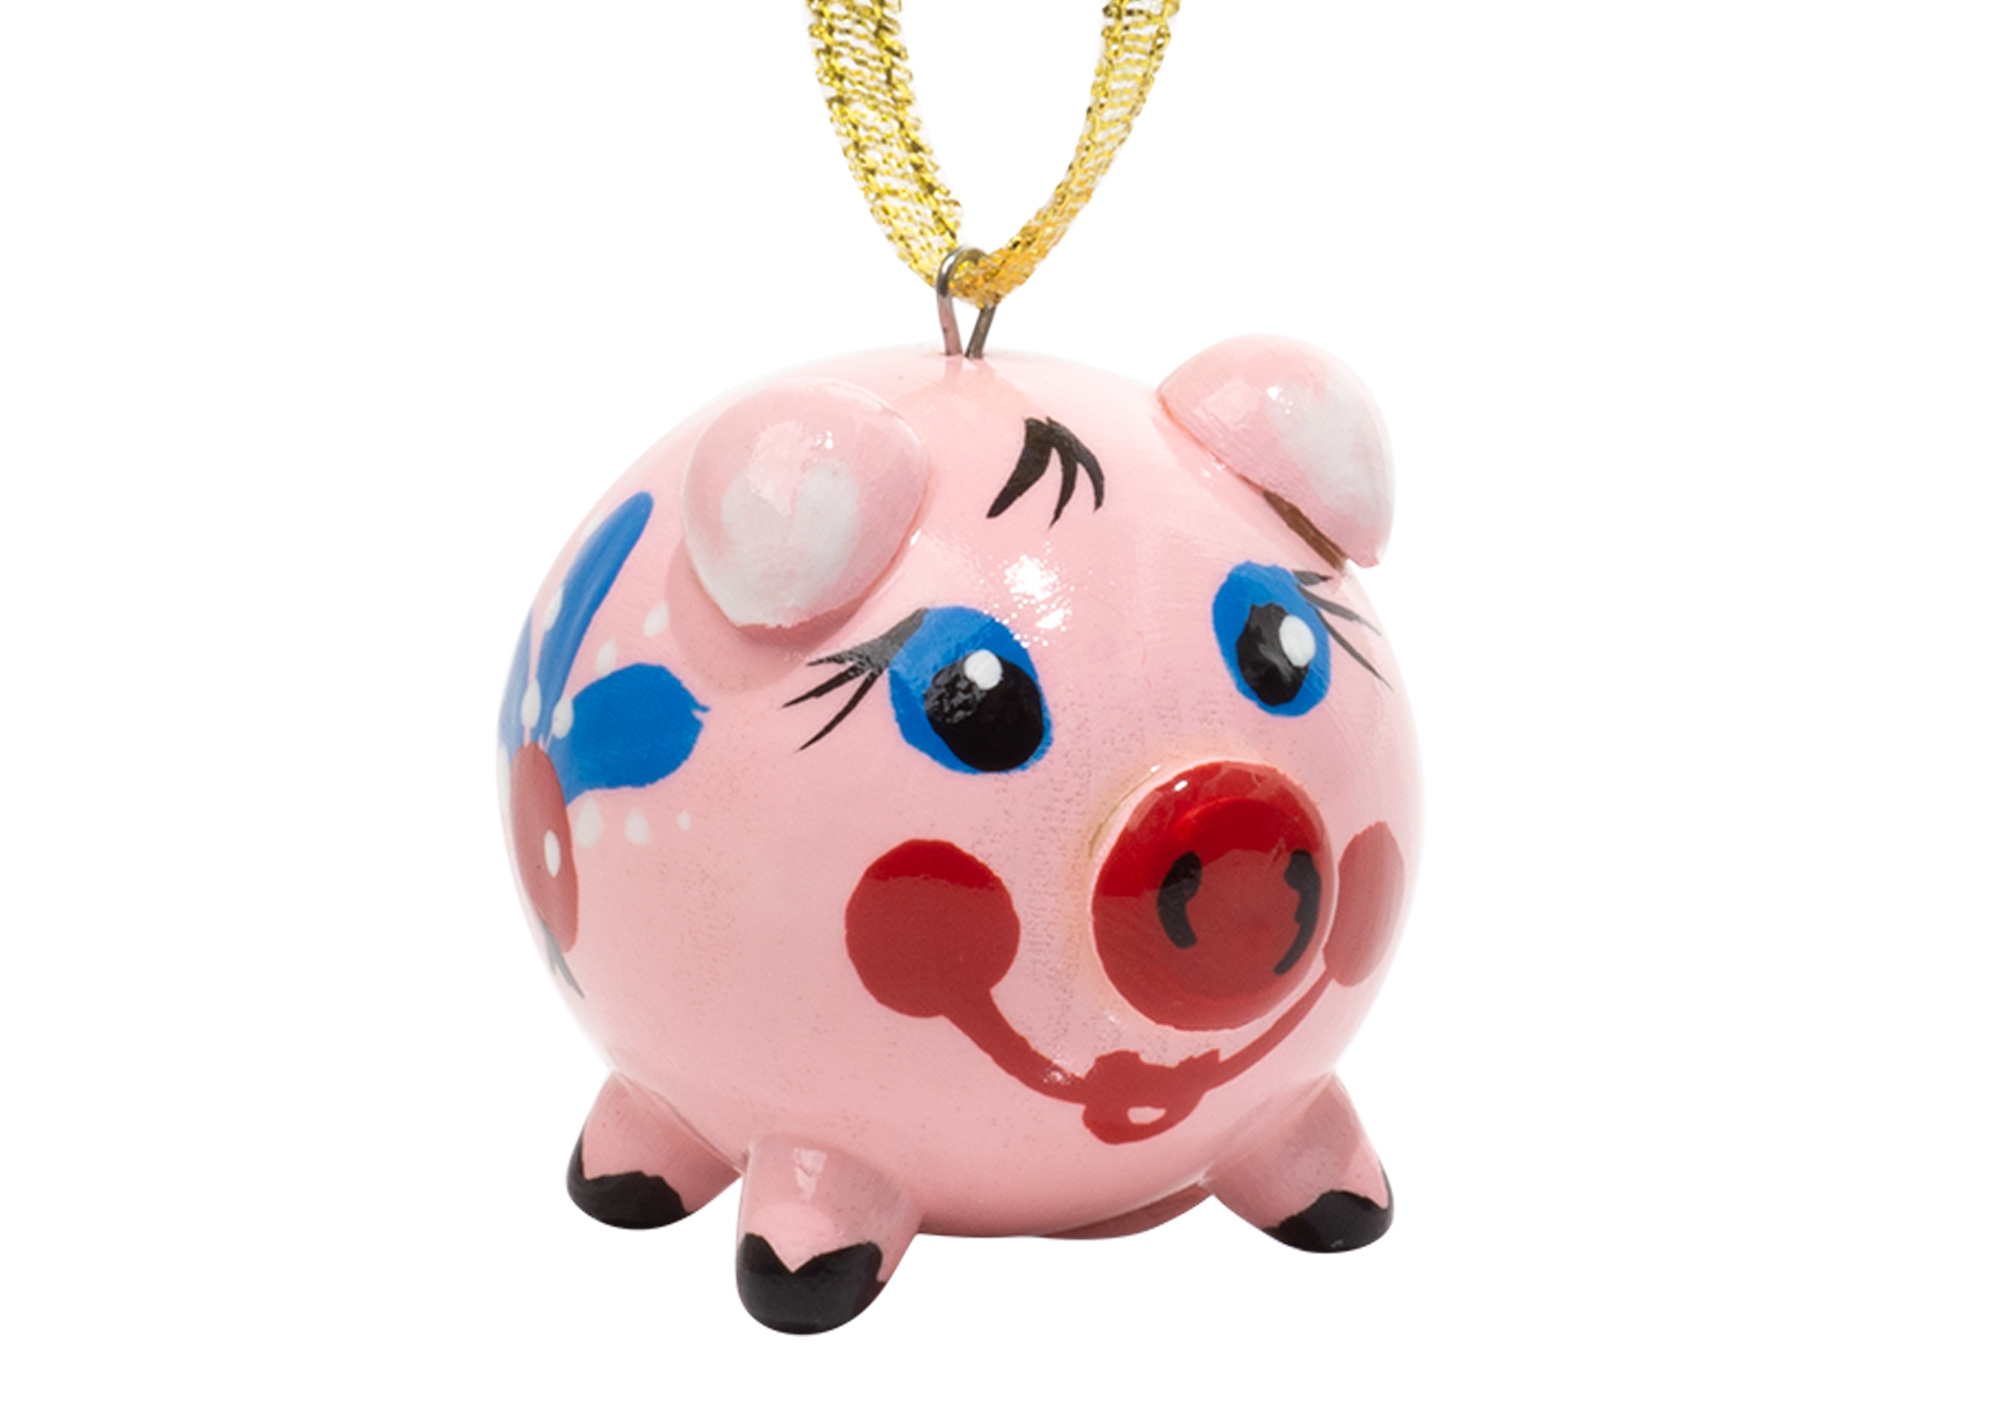 Buy Pig Ornament, 1.5" at GoldenCockerel.com